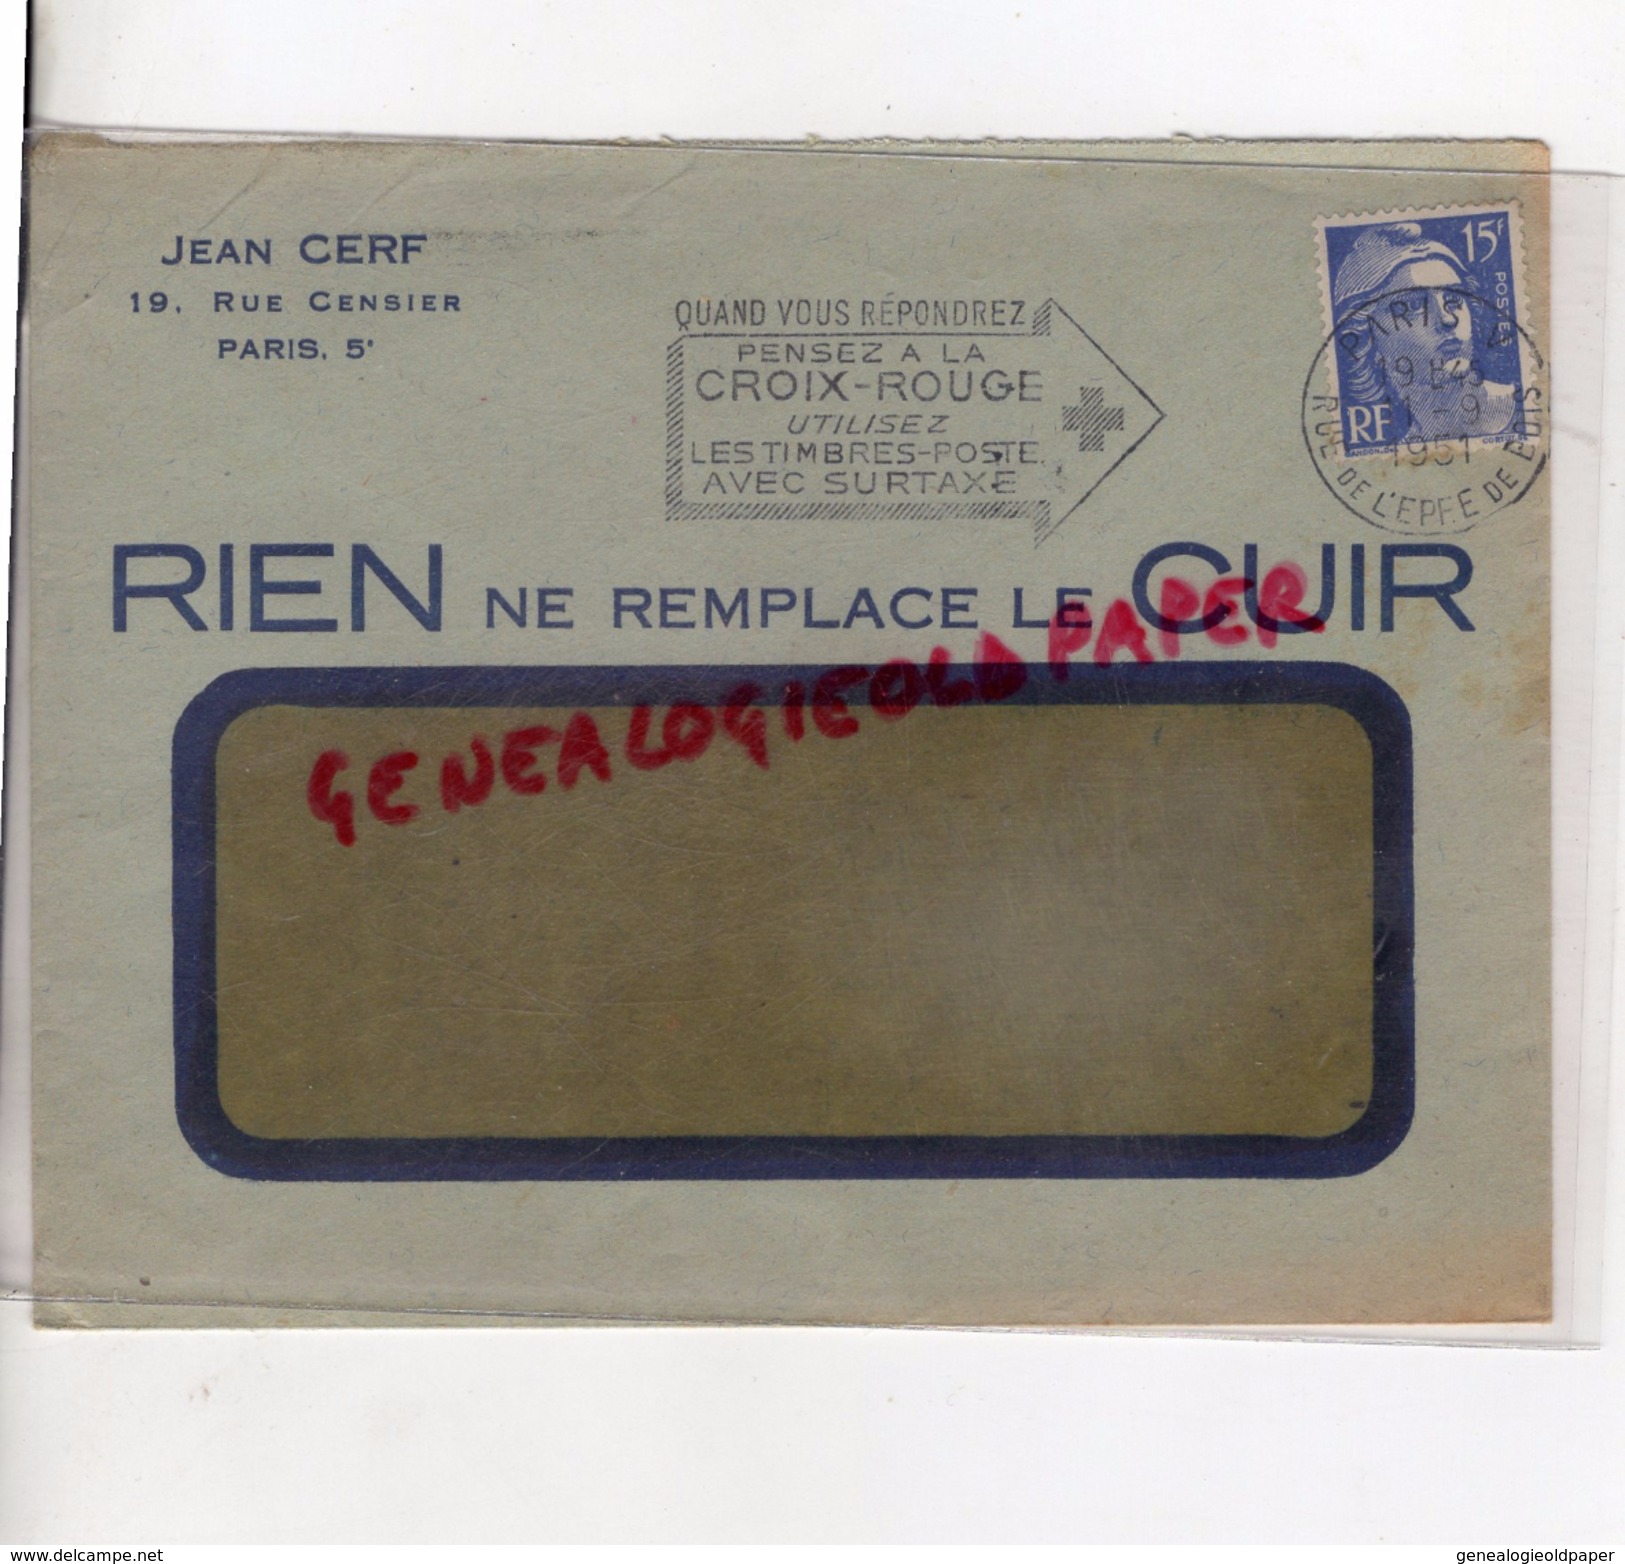 75 - PARIS - ENVELOPPE JEAN CERF- RIEN NE REMPLACE LE CUIR- 1951  FLAMME CROIX ROUGE - 1950 - ...